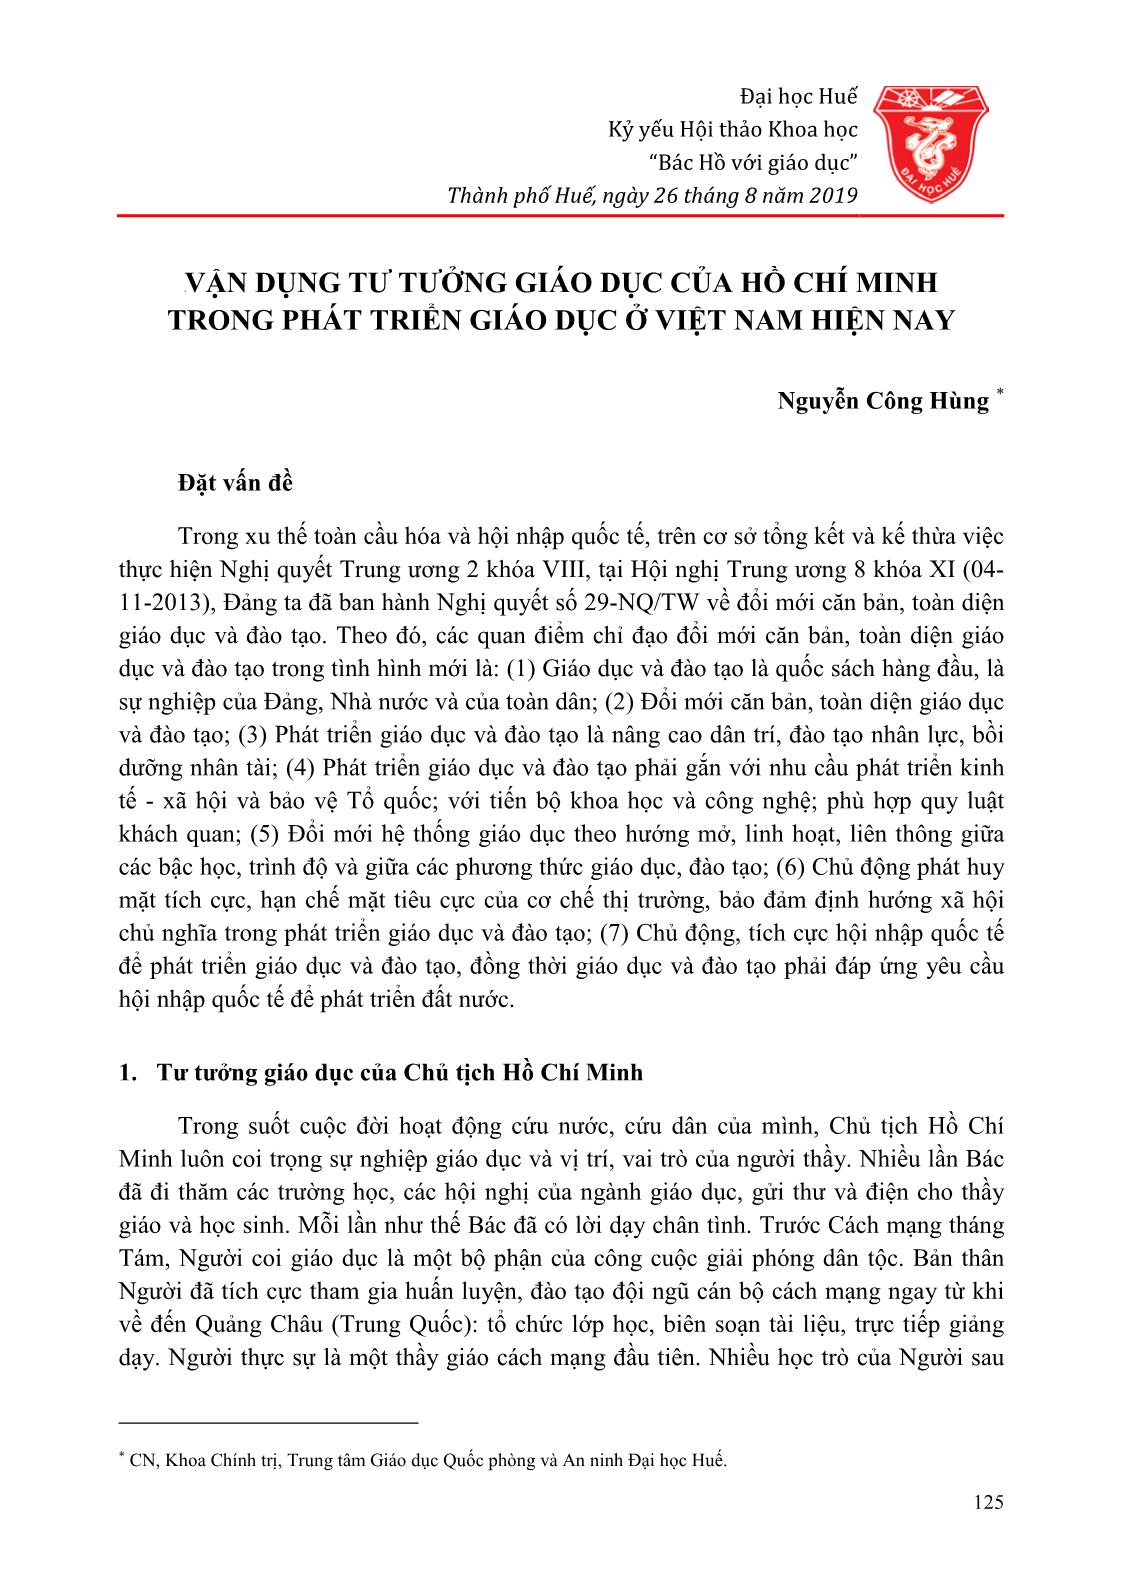 Vận dụng tư tưởng giáo dục của Hồ Chí Minh trong phát triển giáo dục ở Việt Nam hiện nay trang 1